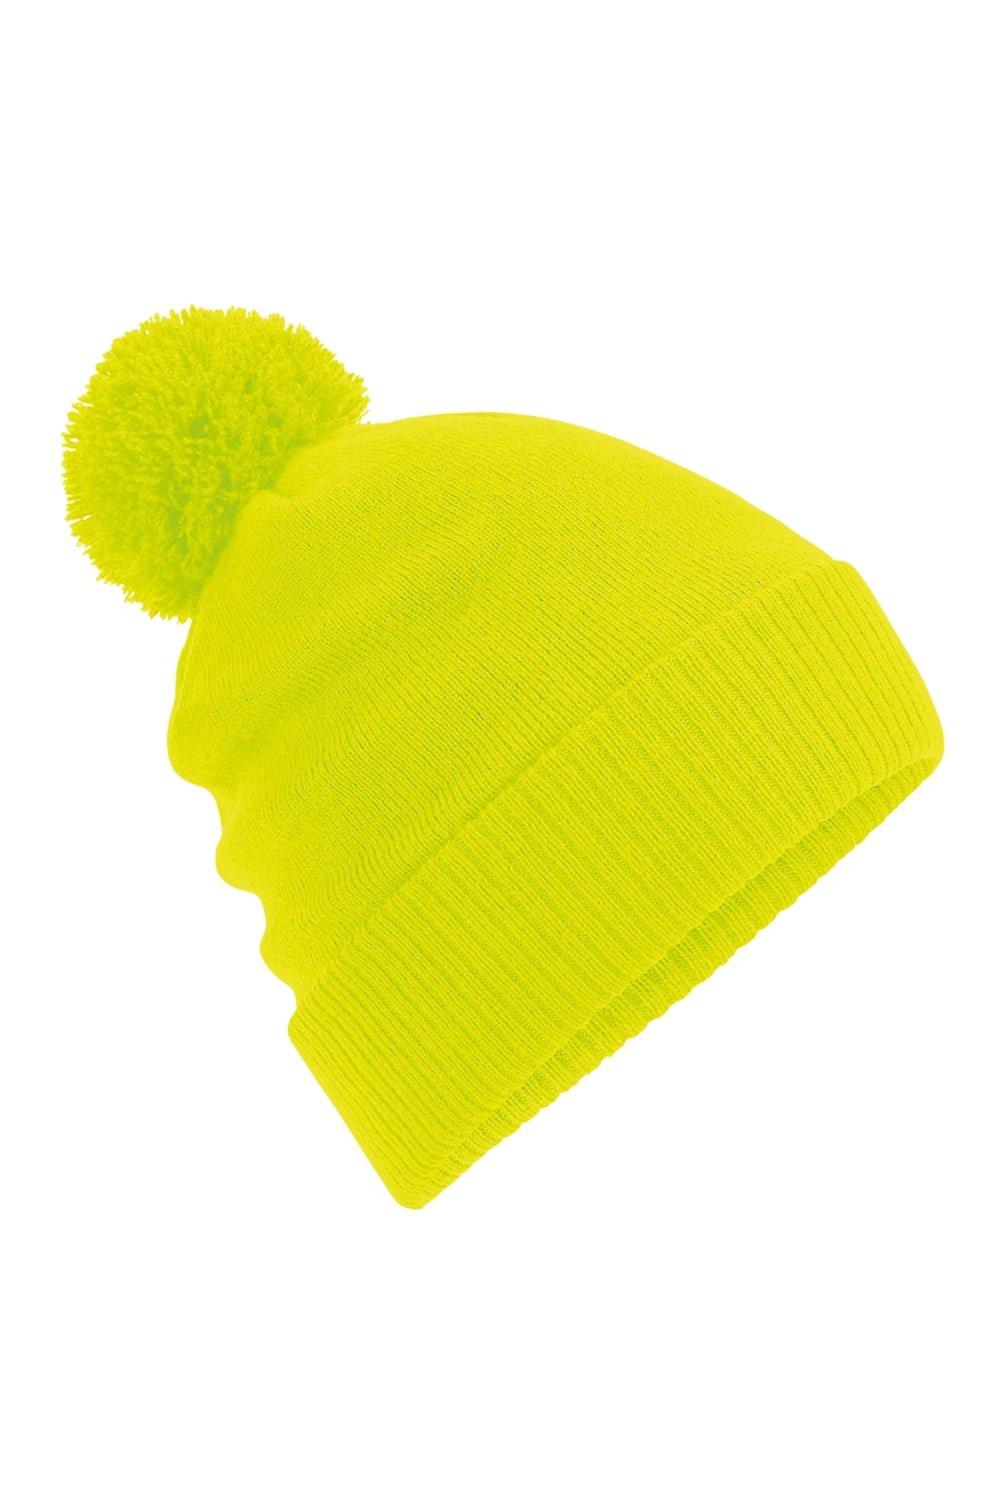 Тепловая шапка Snowstar Beechfield, желтый